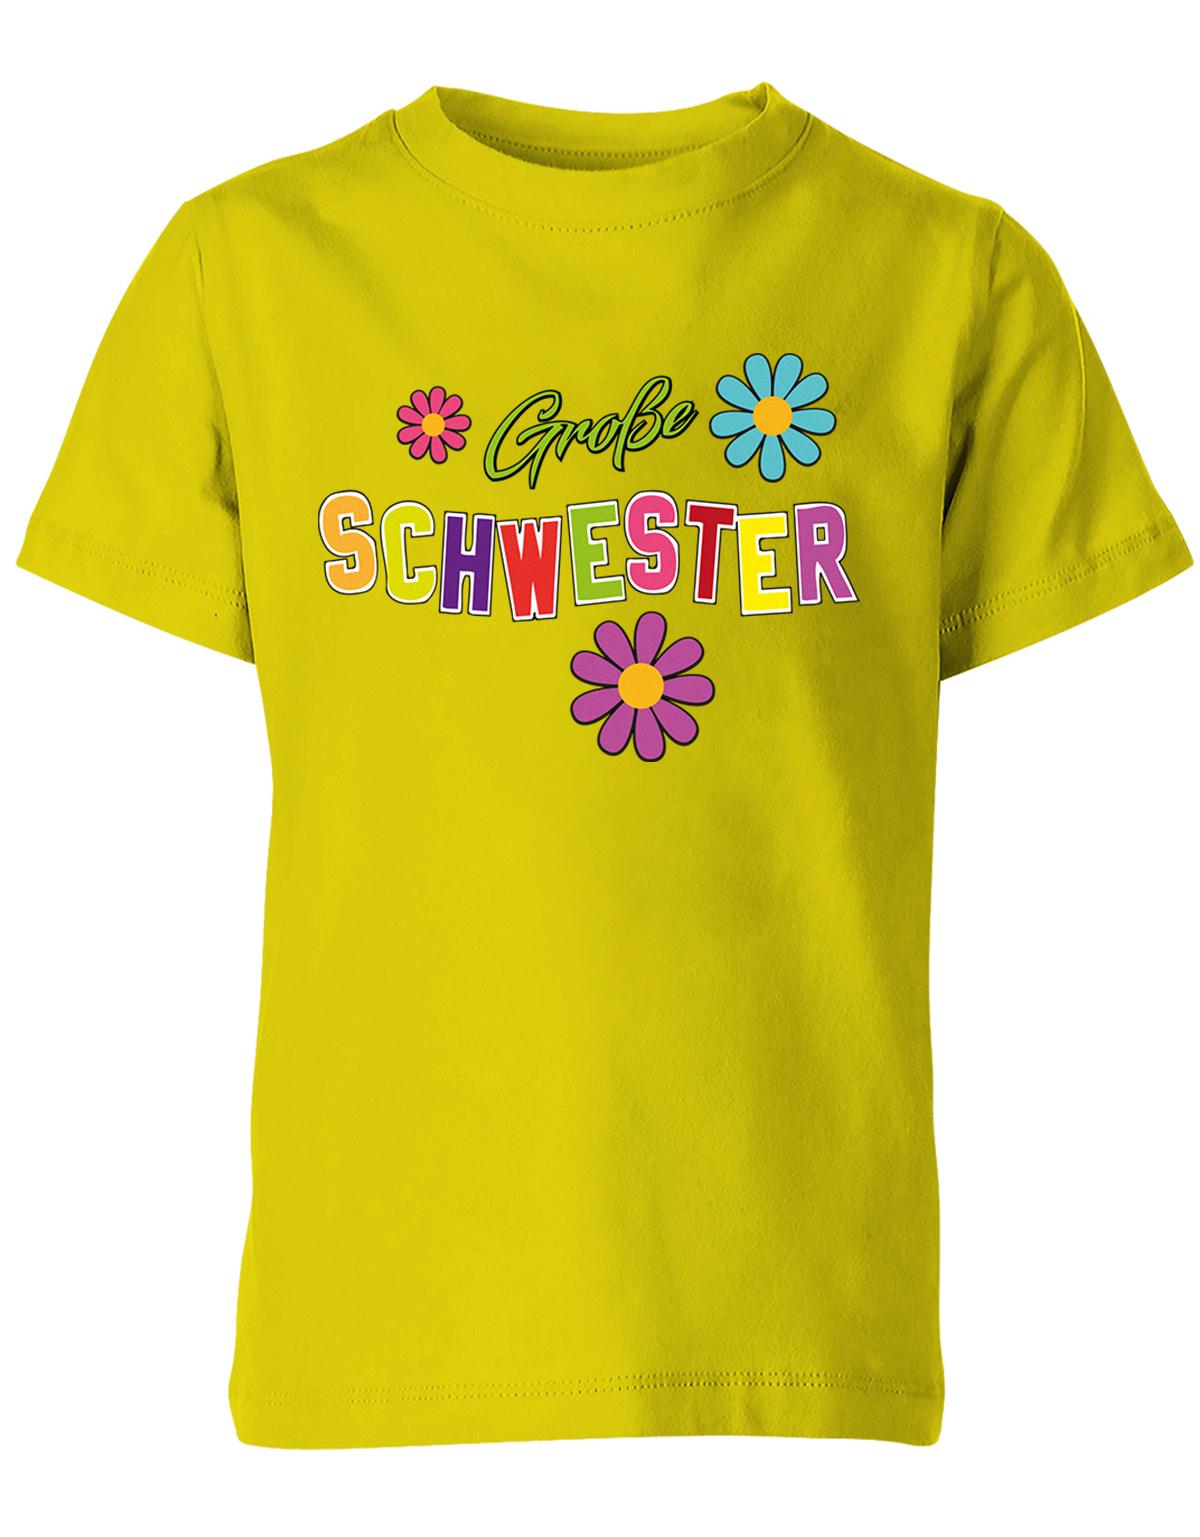 Grosse-Schwester-Kinder-Shirt-Gelb